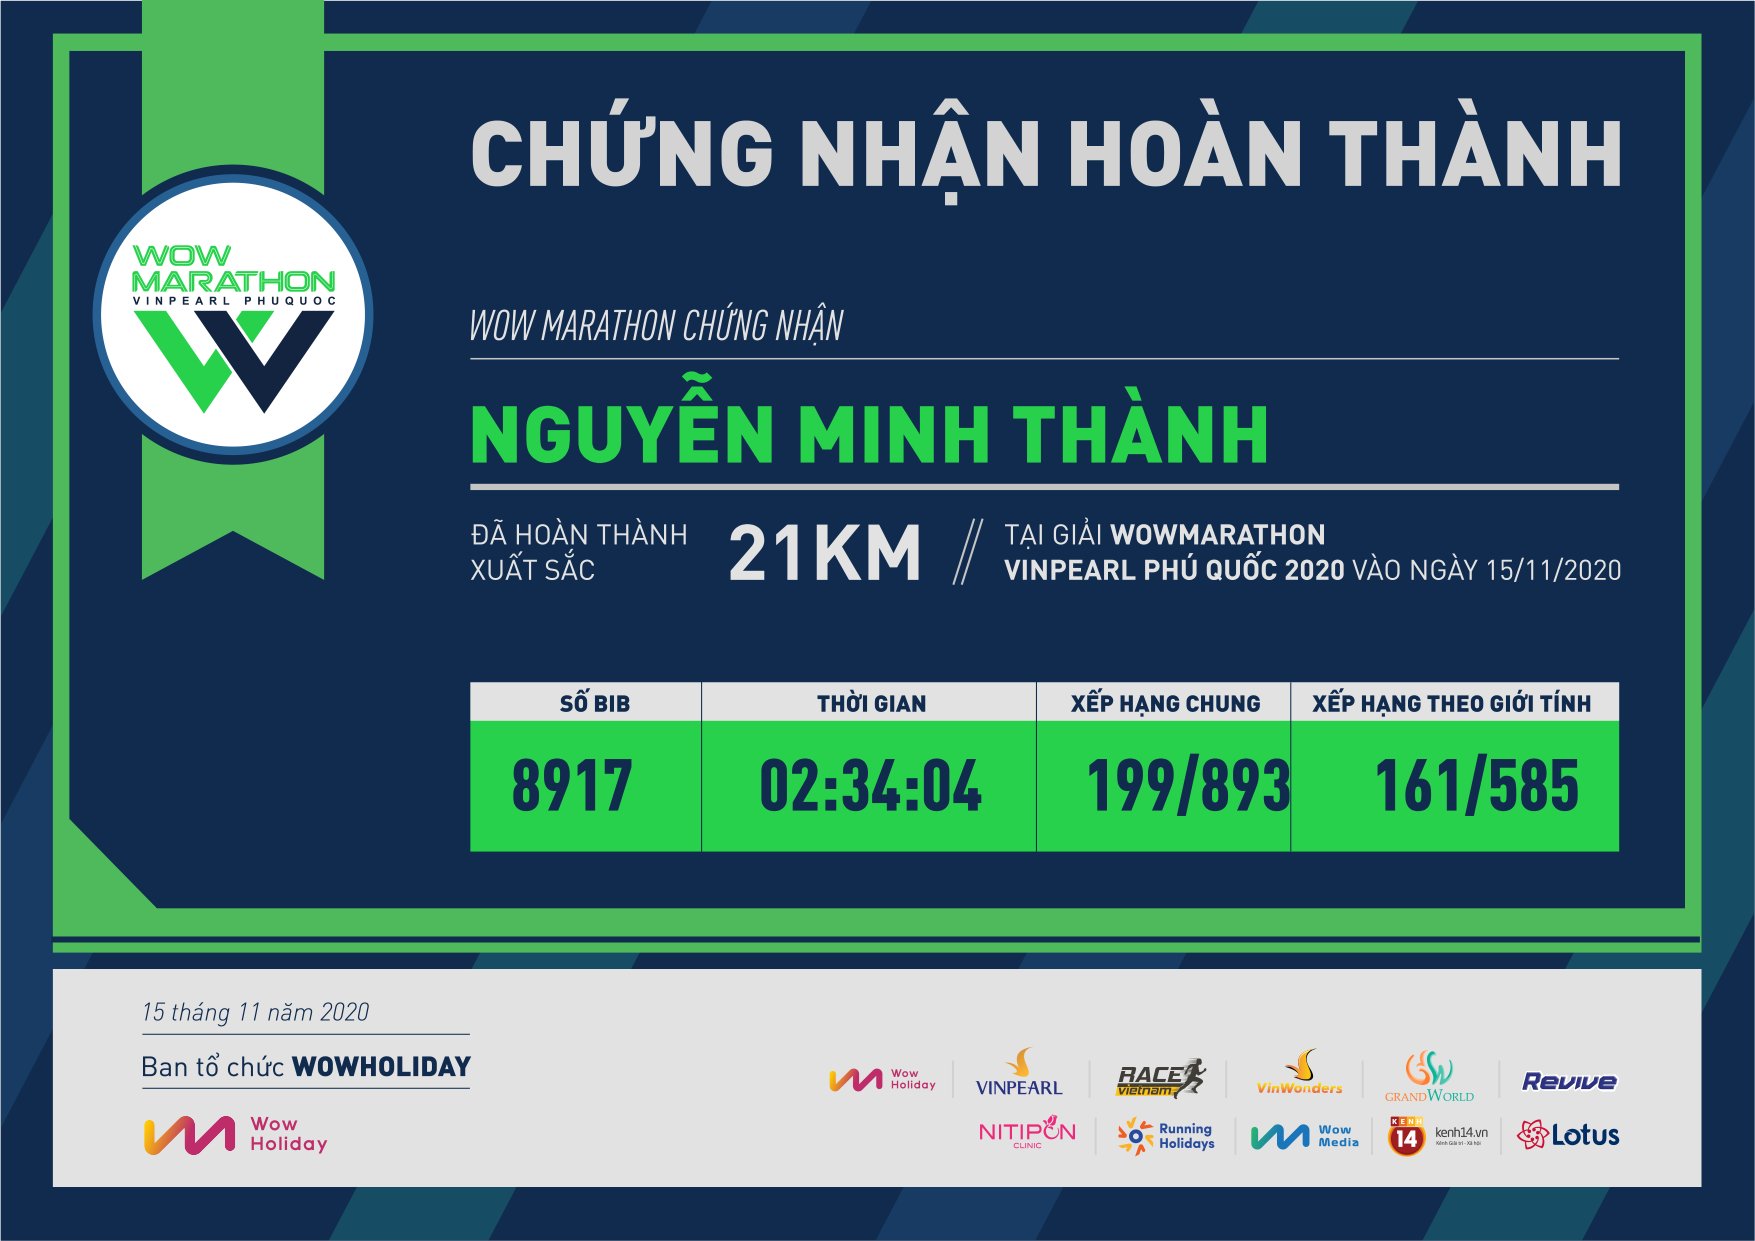 8917 - Nguyễn Minh Thành